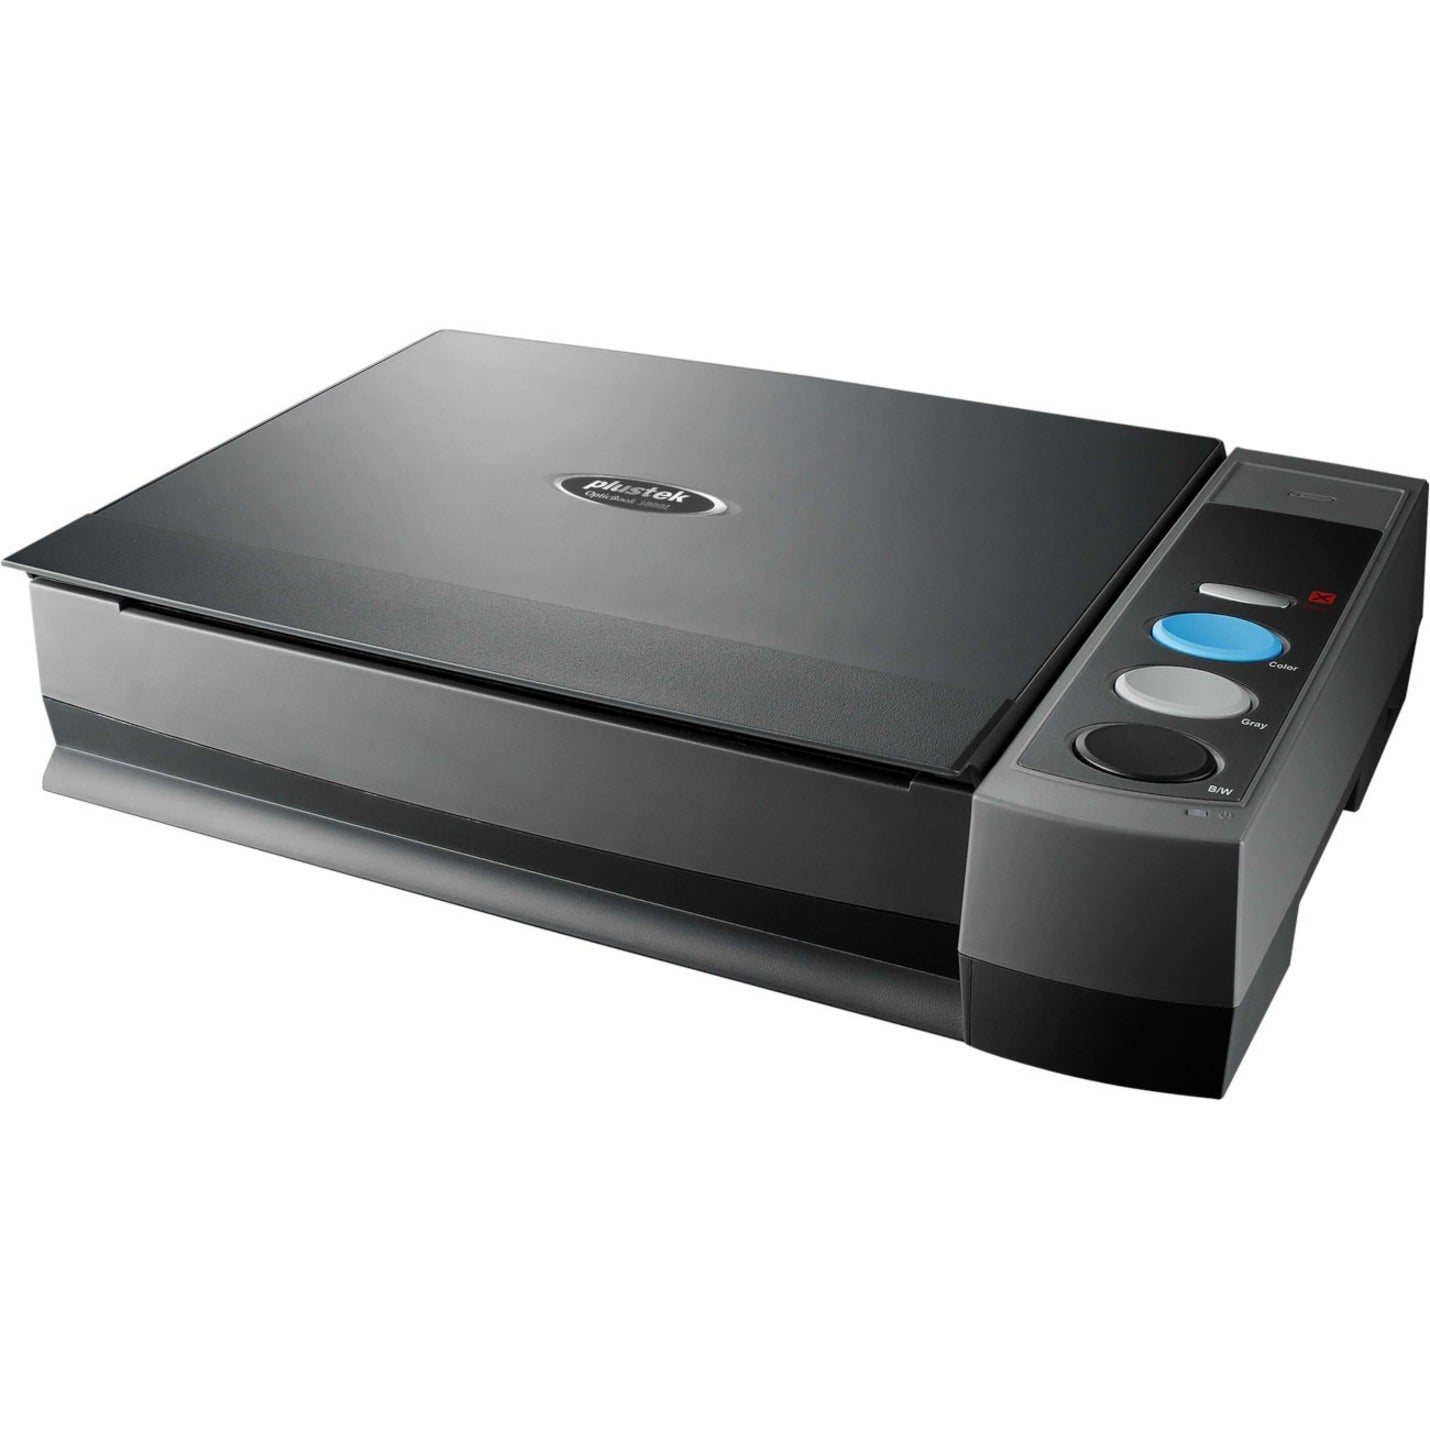 Plustek OB3800L OpticBook 3800L Flatbed Scanner, A4 Book Scanner